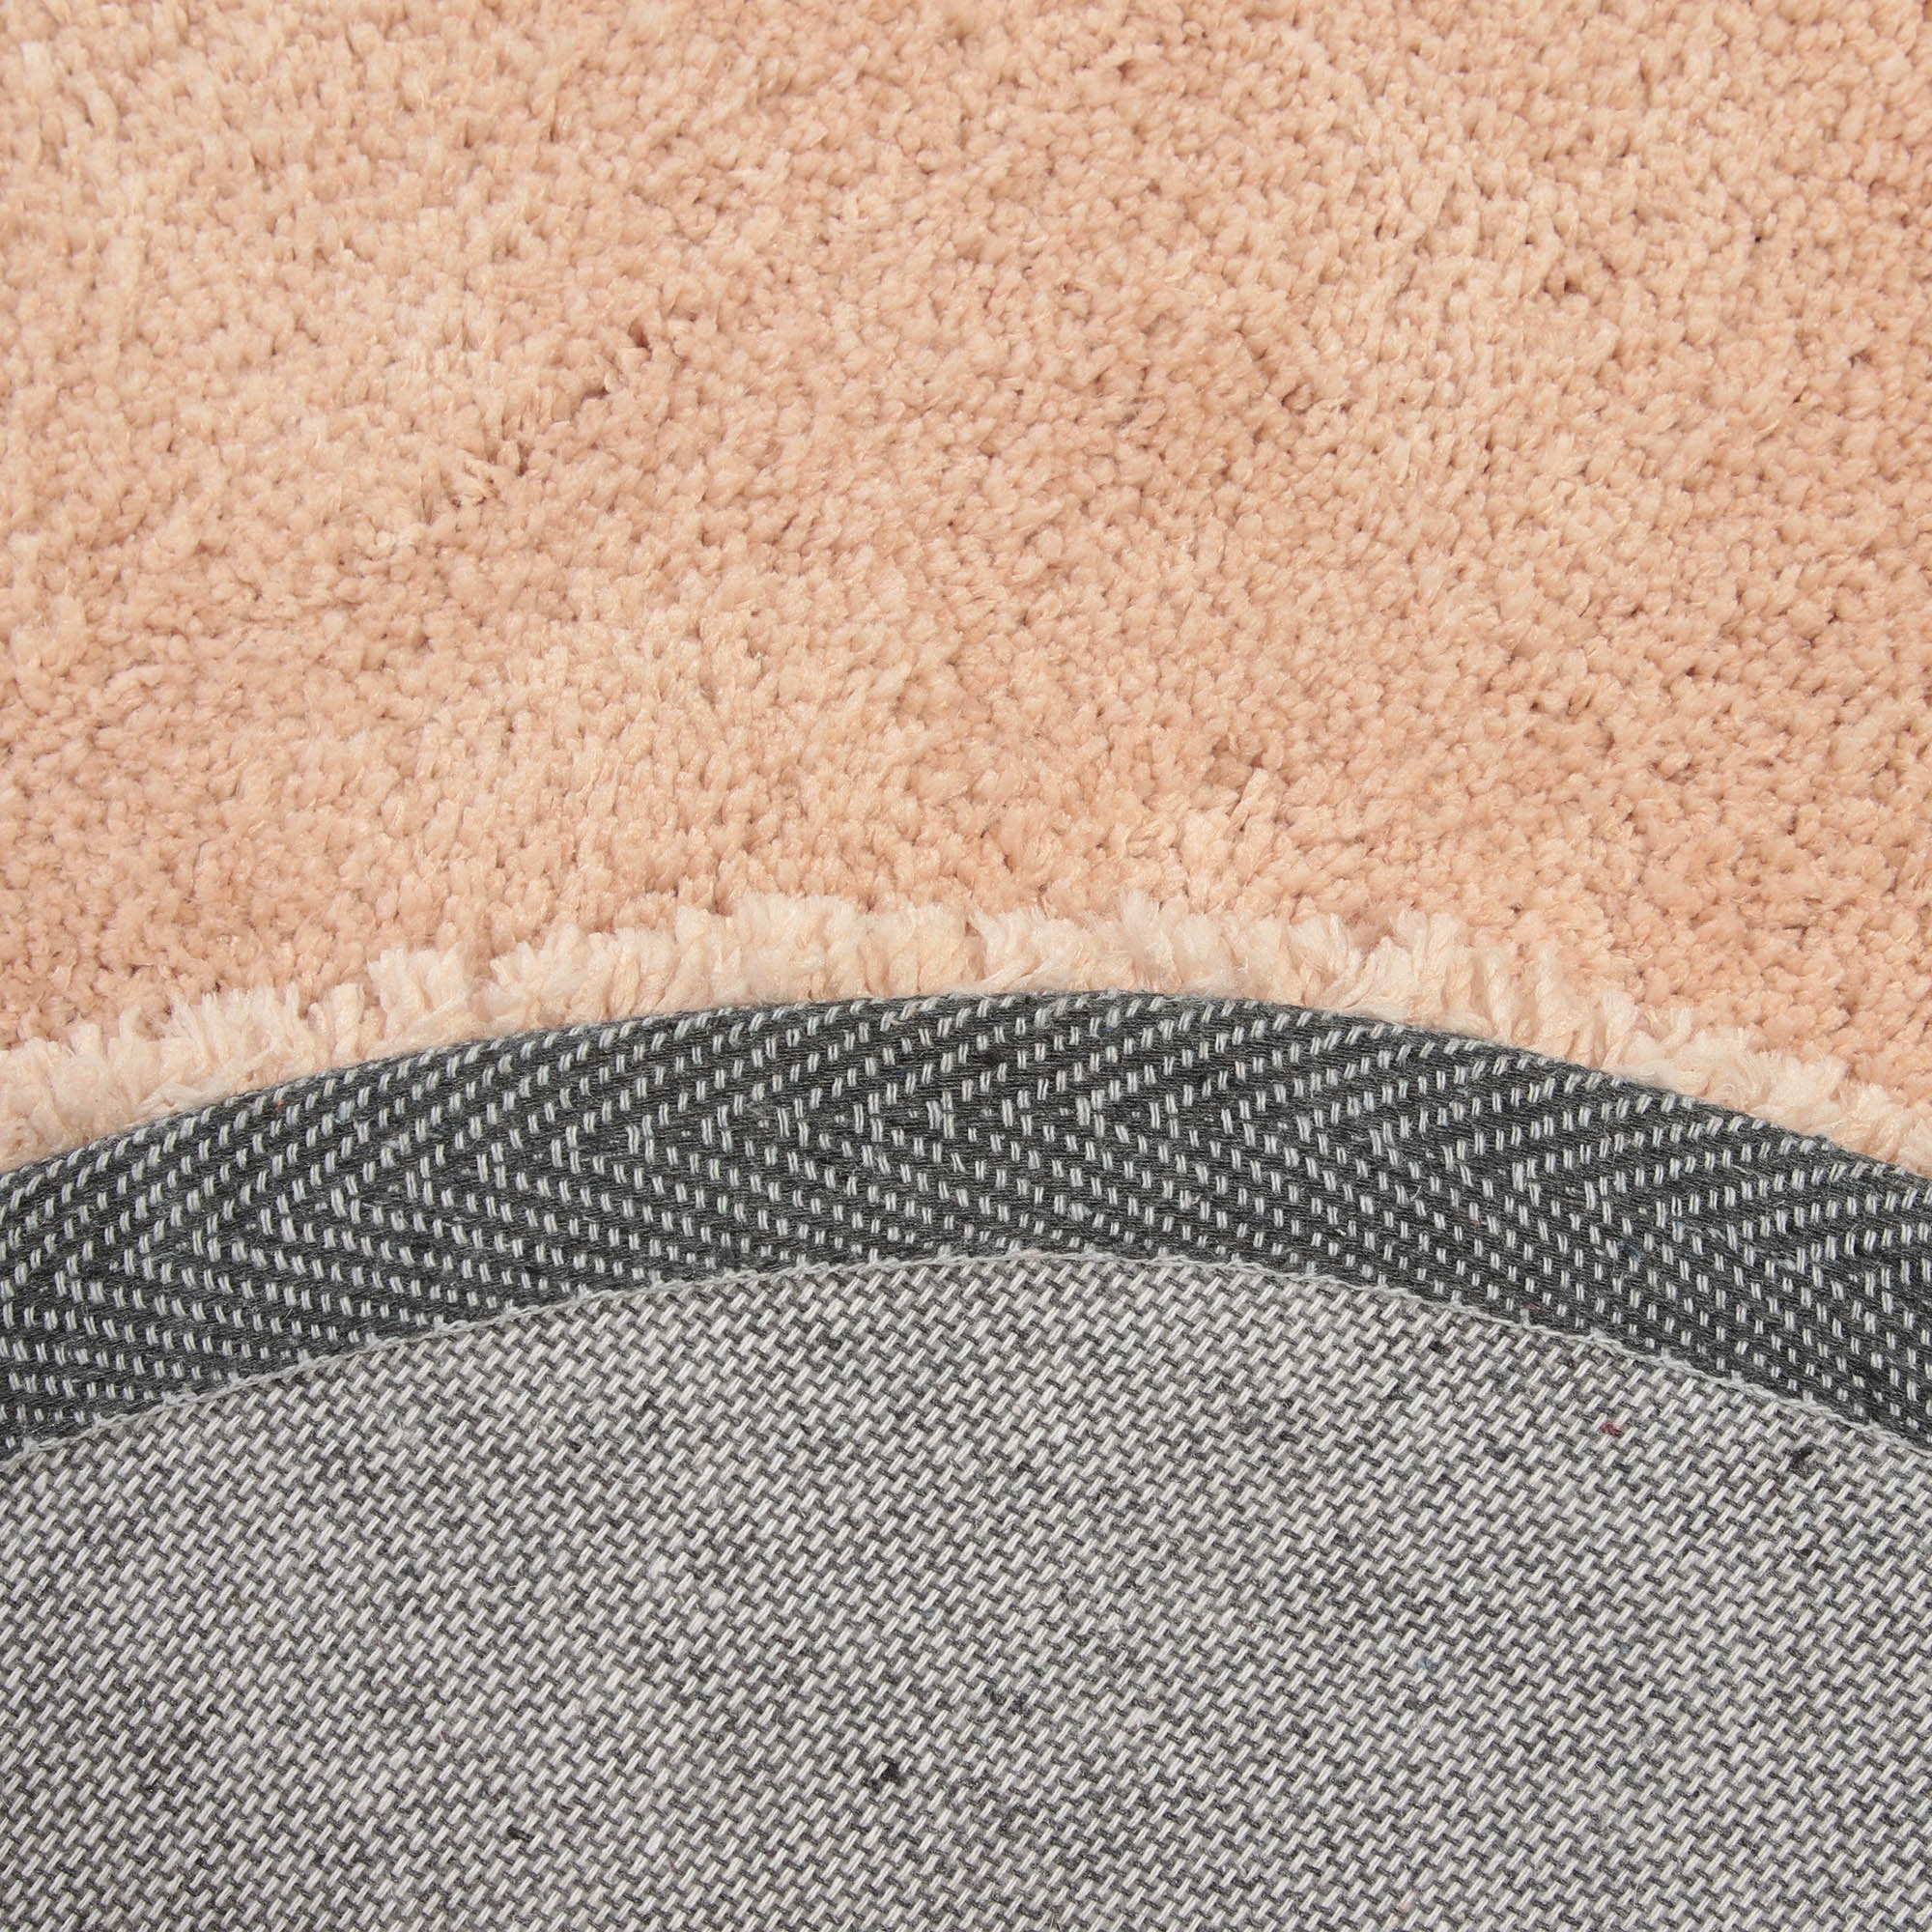 Коврик Silverstone Carpet овальный светло-персиковый 60х90 см - фото 6